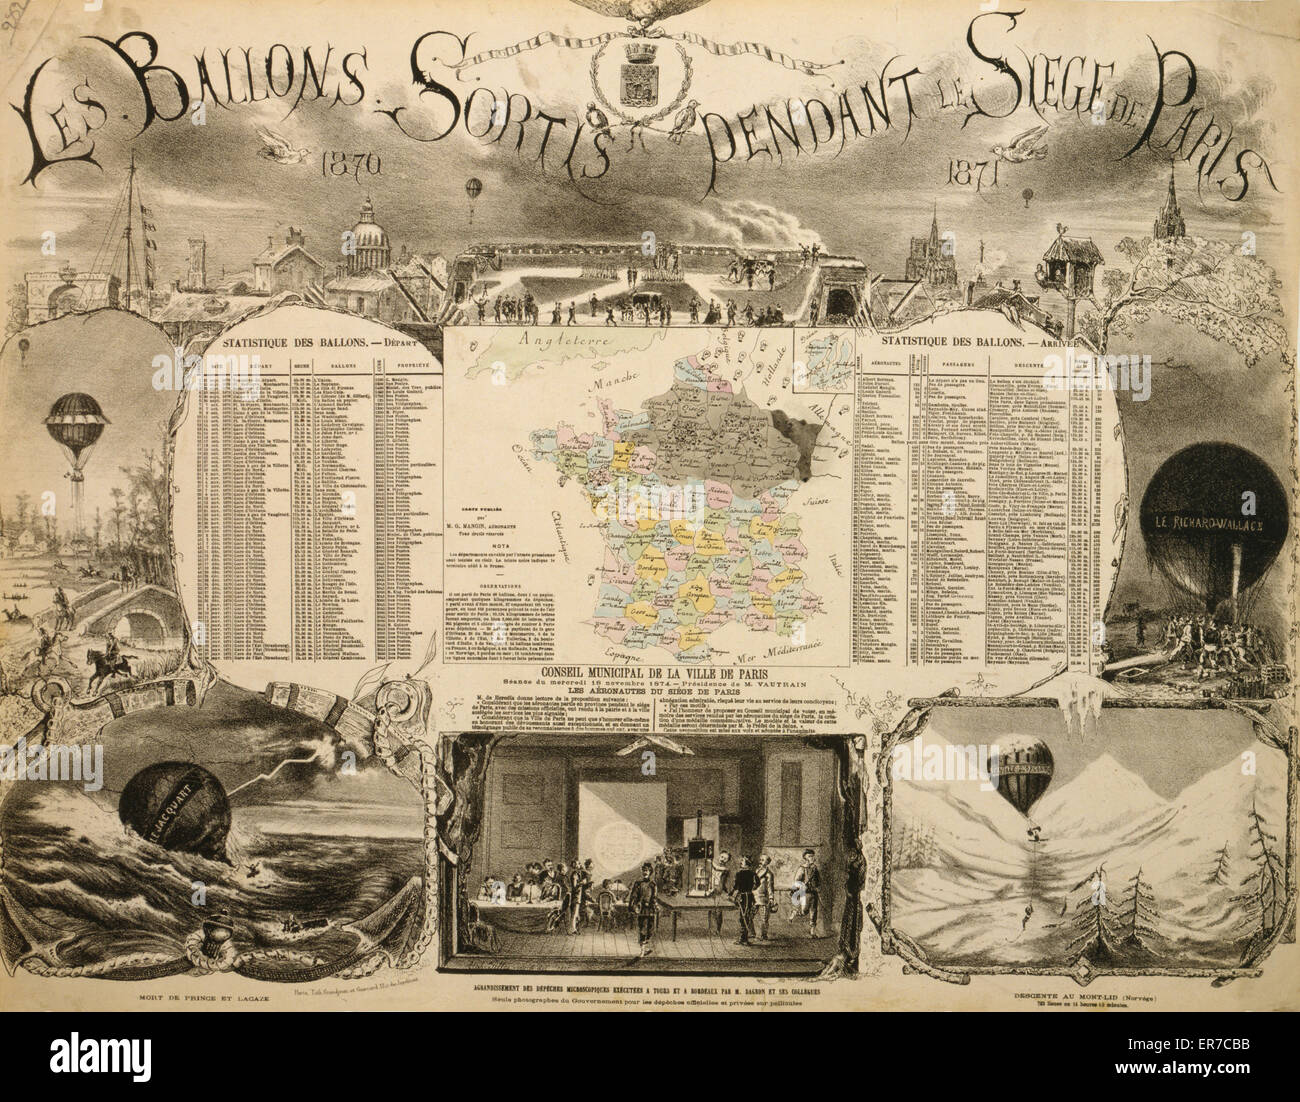 Le ballons sortis pendant le Siege de Paris, 1870-1871 Stock Photo